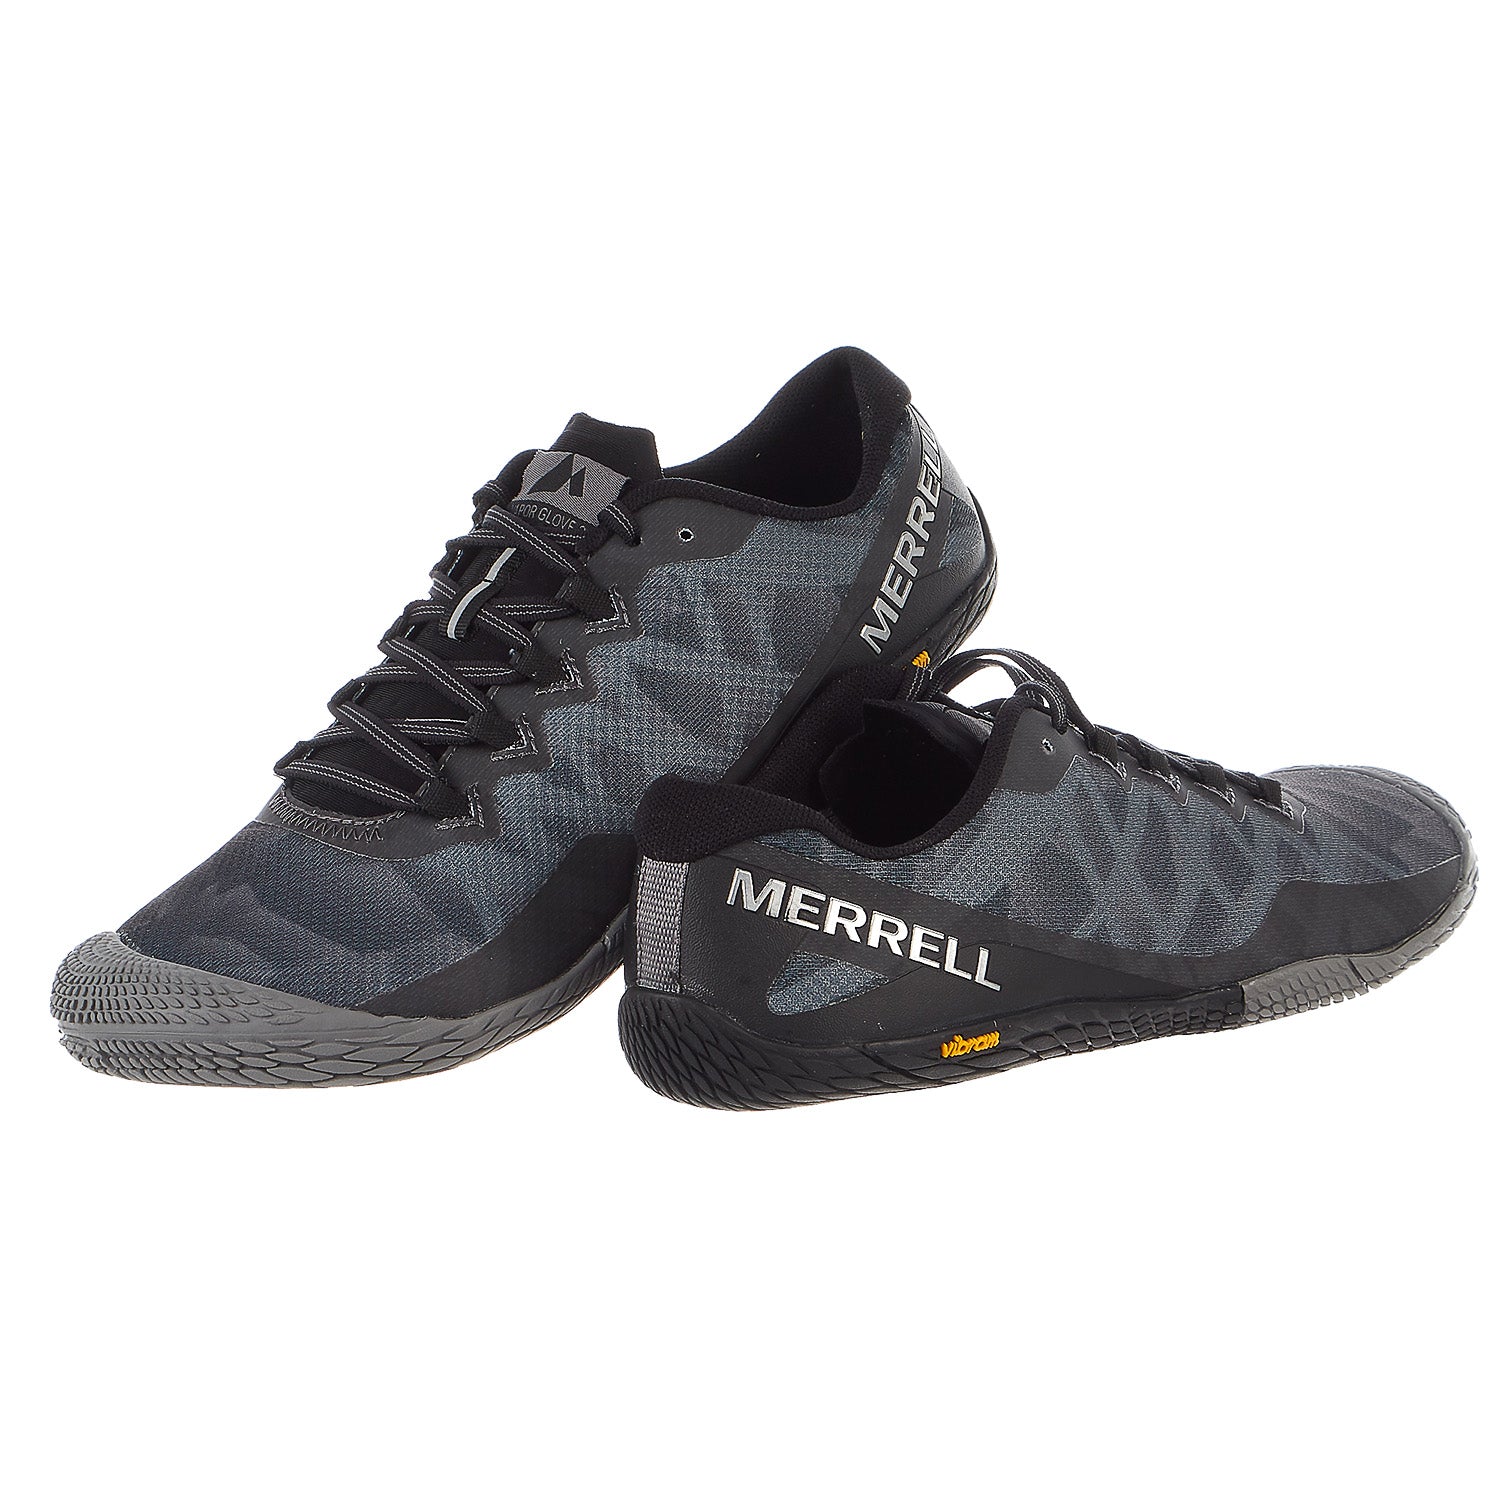 Merrell Glove 3 Trail Runner - Men's - Shoplifestyle